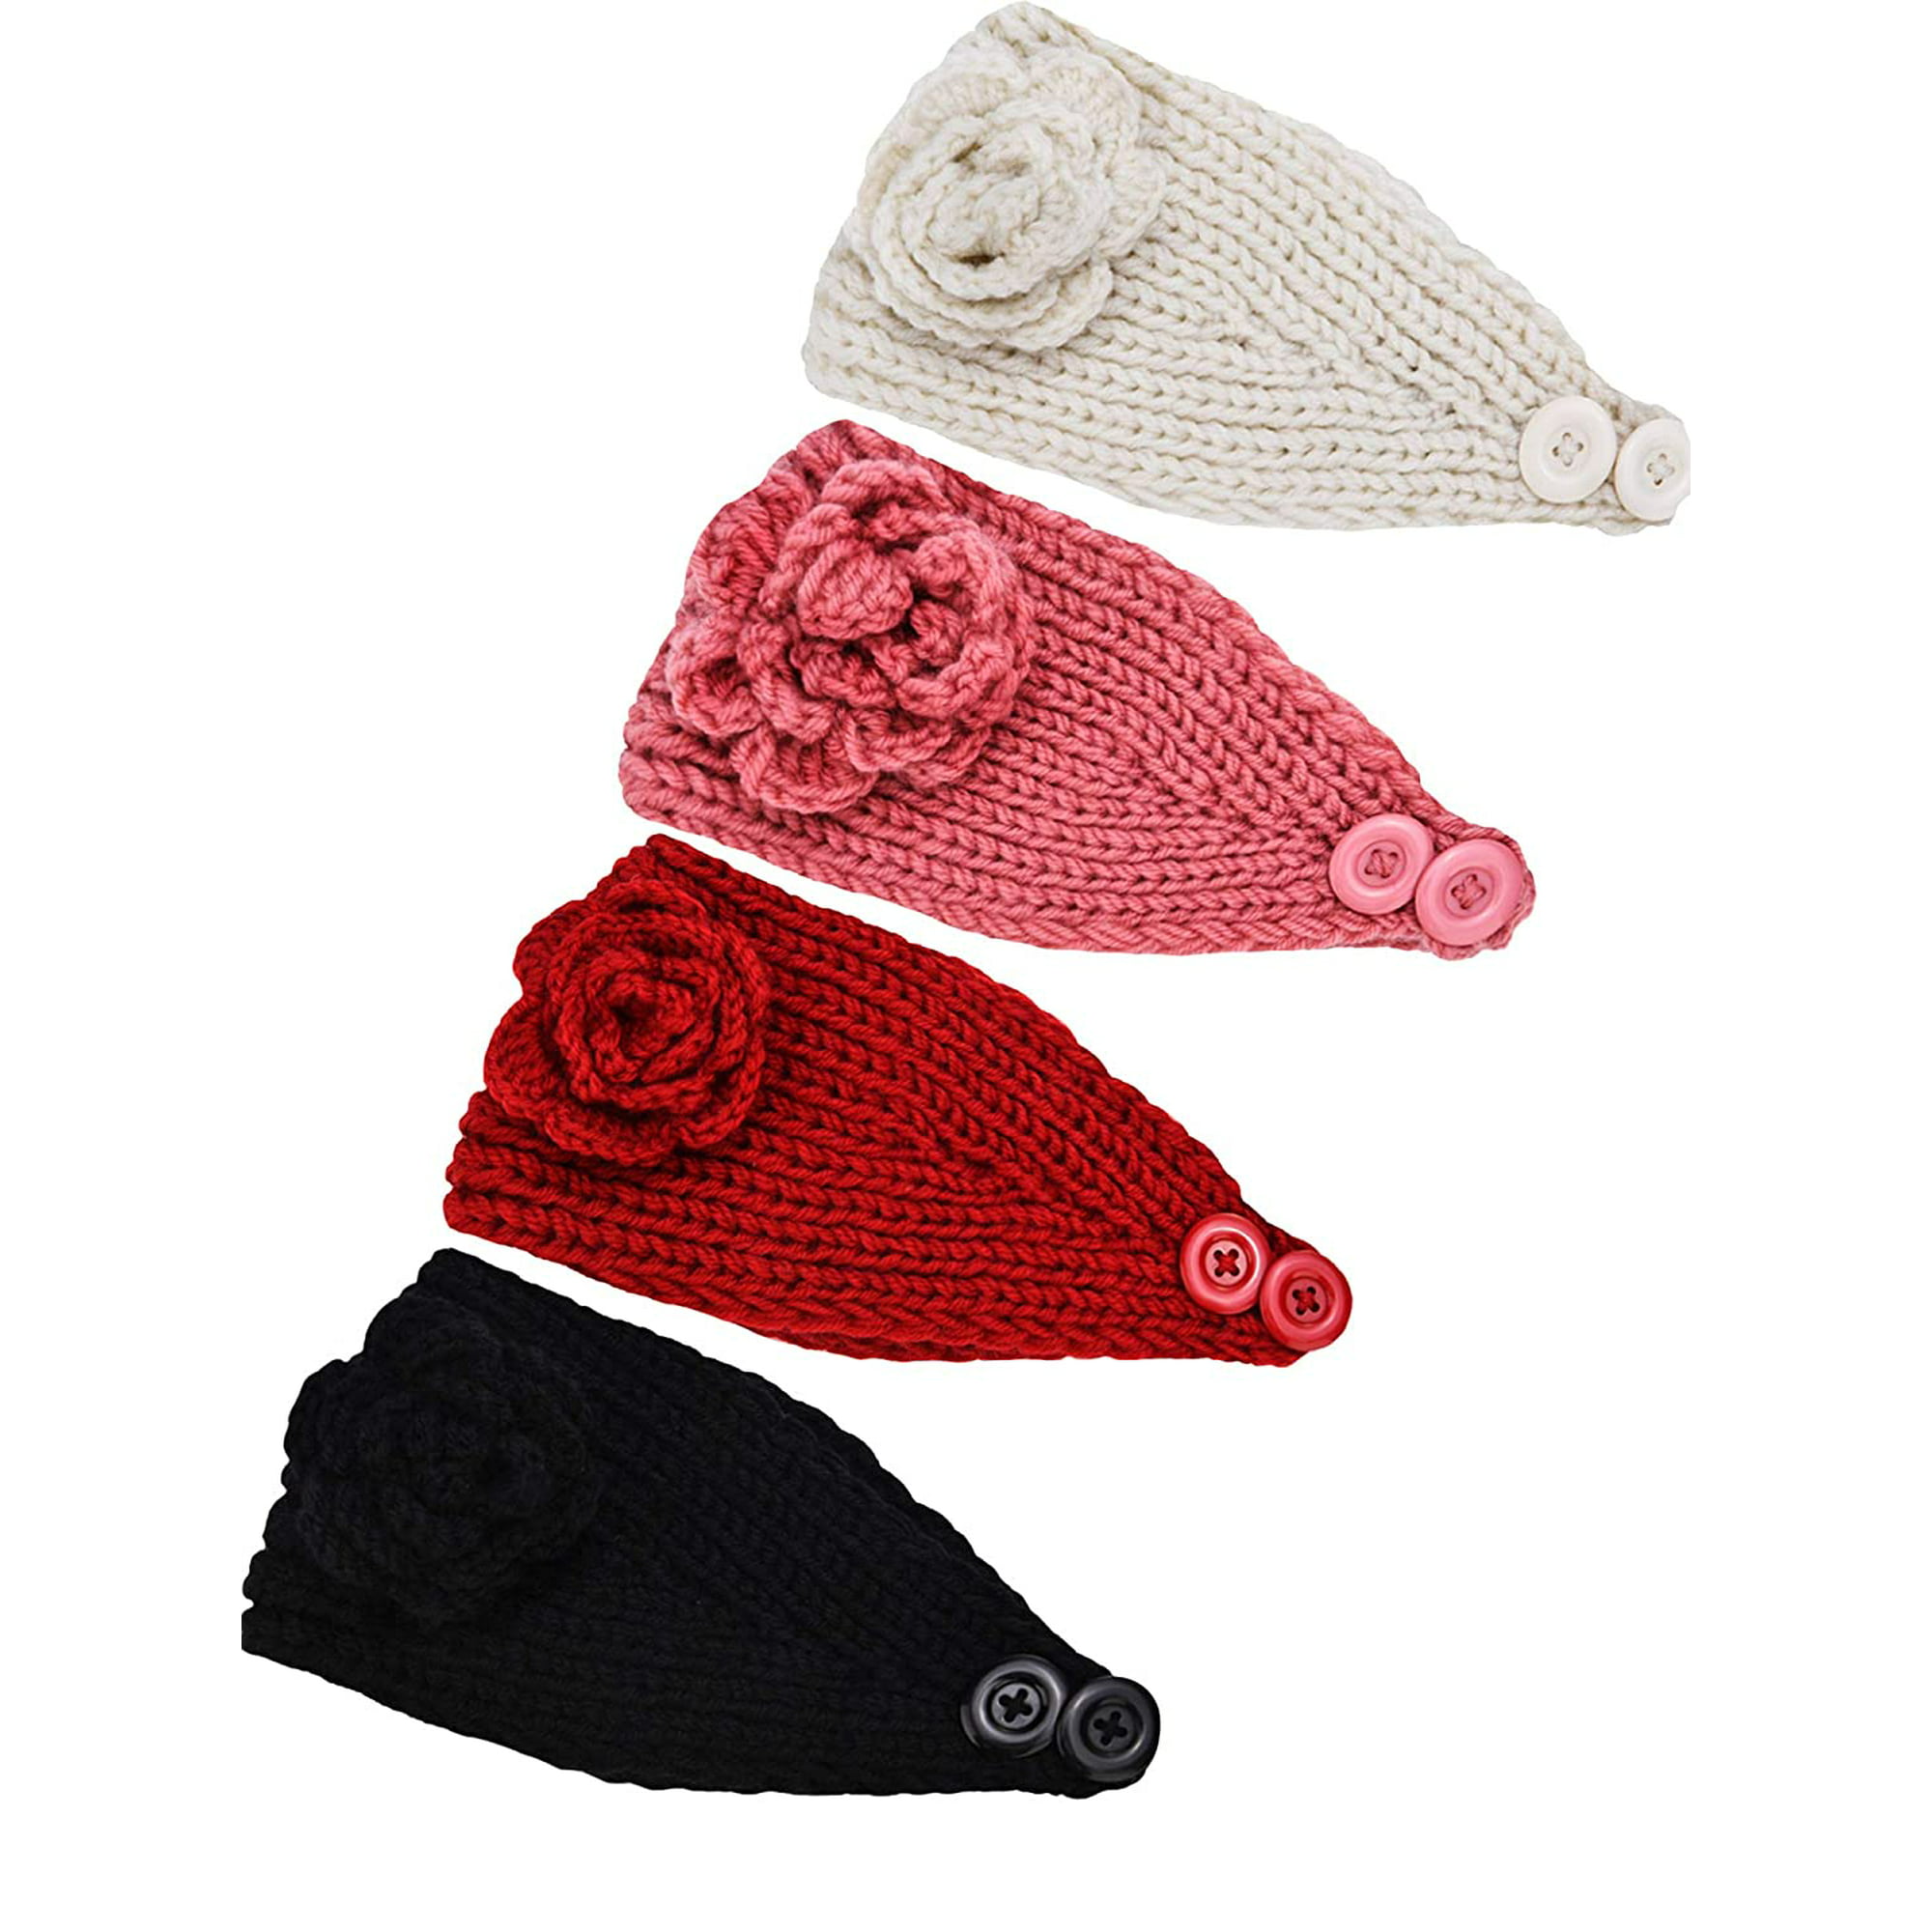 Chunky Knit Headbands Braided Winter Headbands Ear Warmers Crochet Head Wraps...